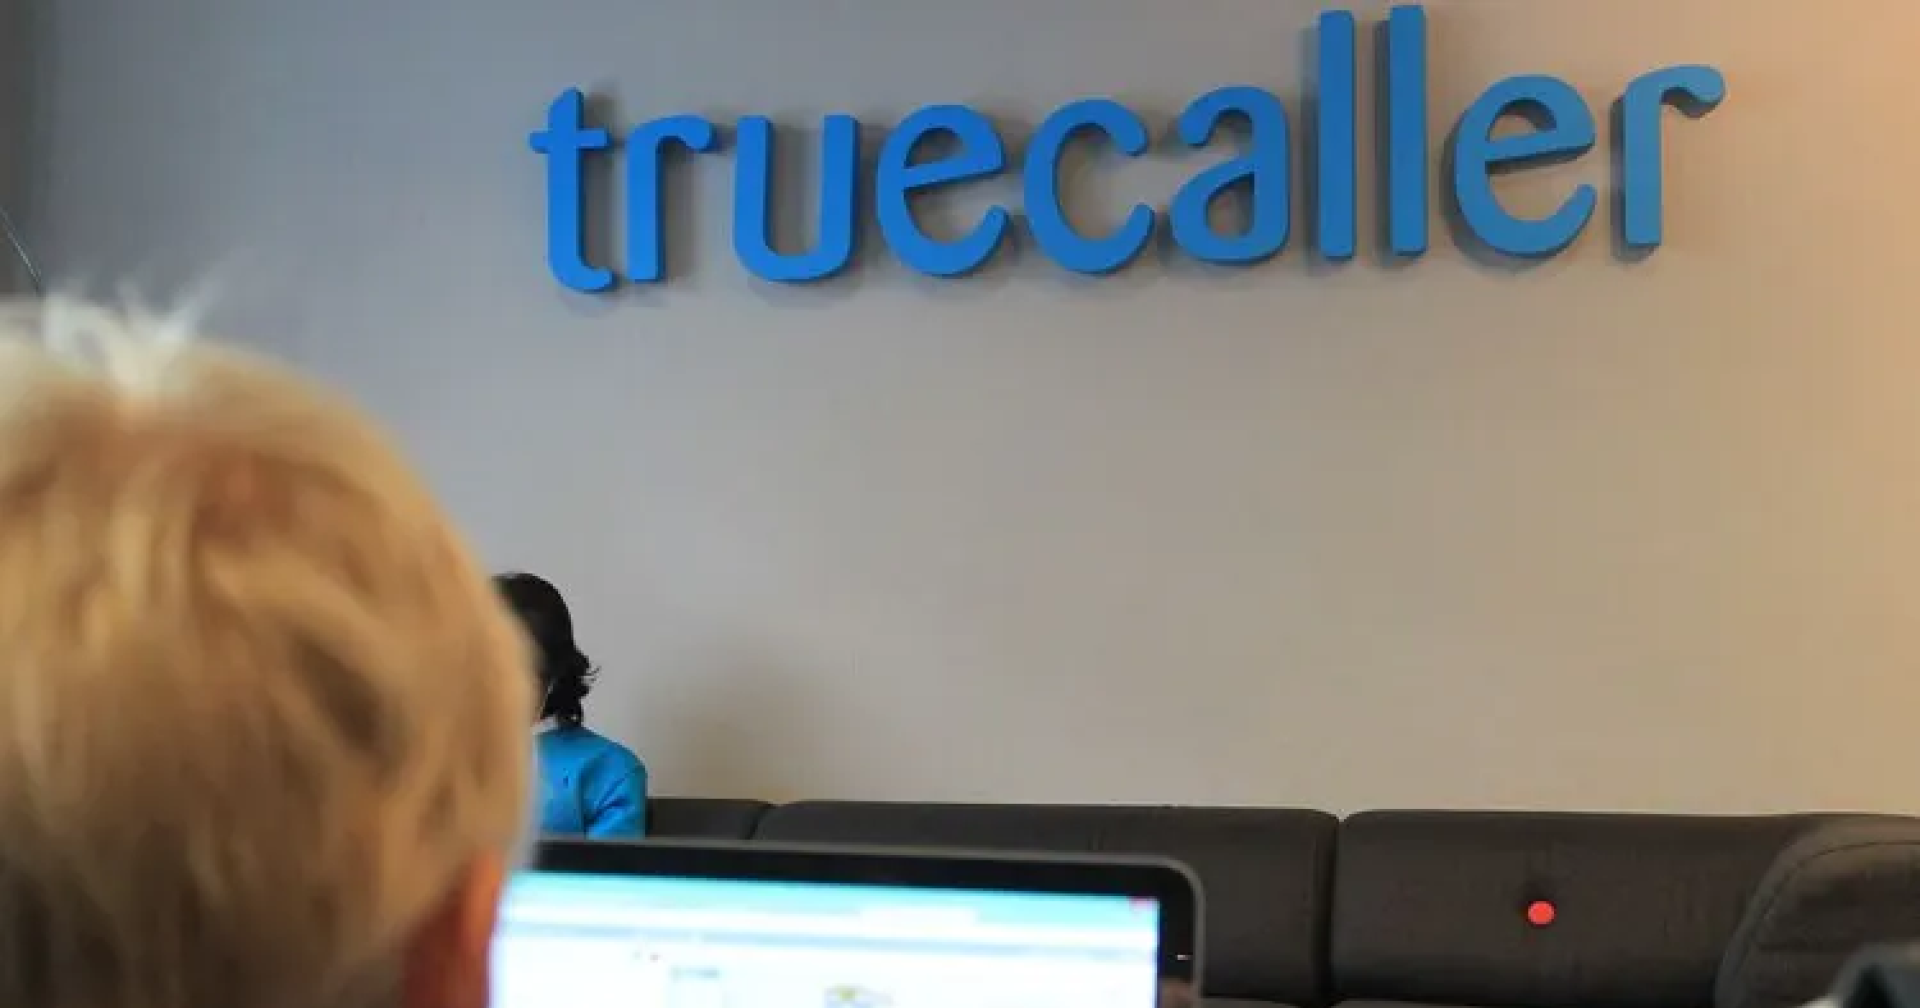 Truecaller เตรียมนำระบบระบุตัวตนสายเรียกเข้ามาใช้ใน WhatsApp และแอปสนทนาอื่น ๆ